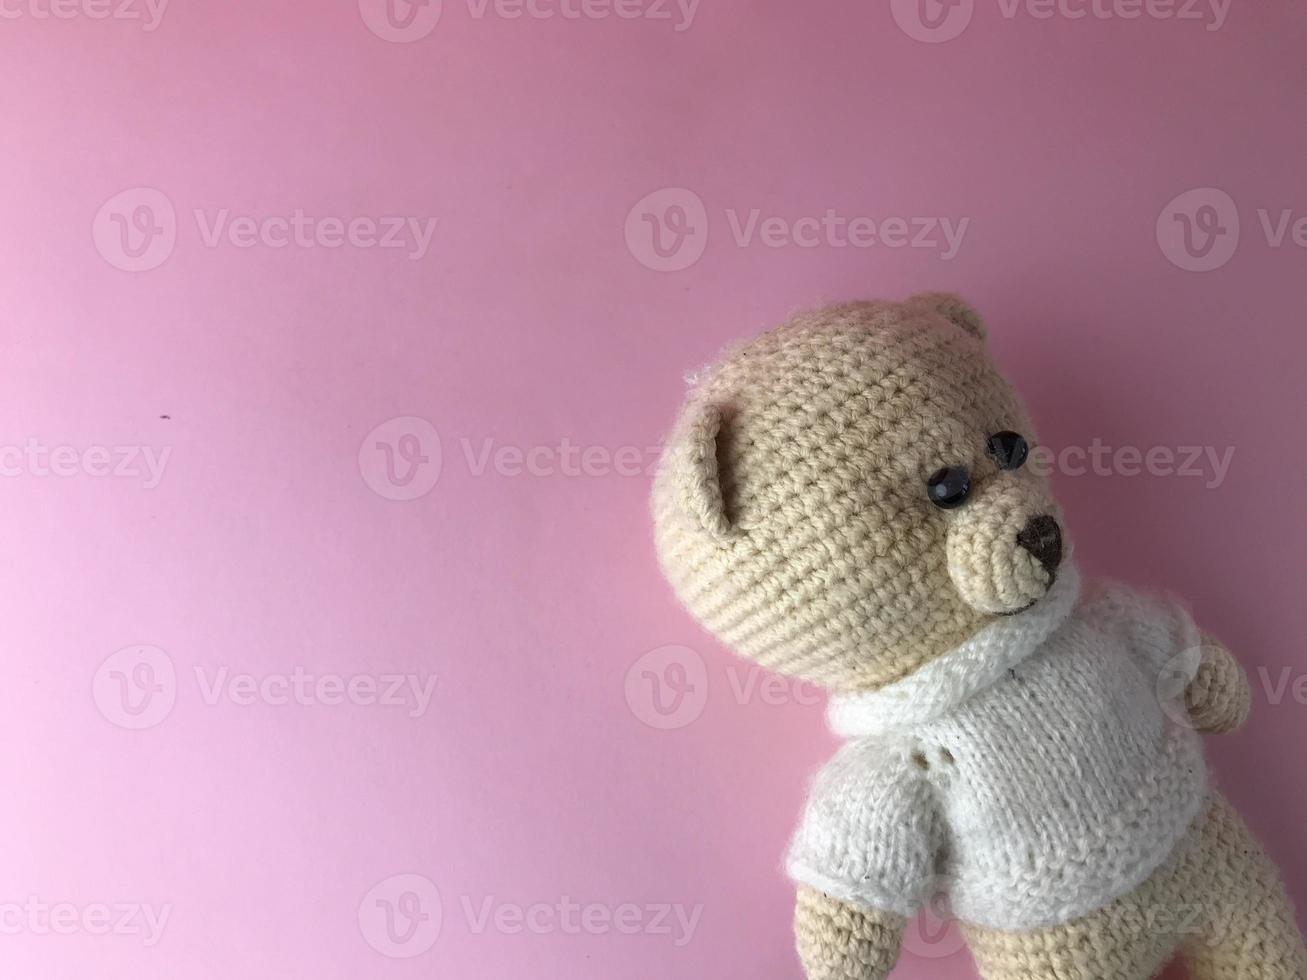 jouet intérieur - un ours tricoté doux sur fond rose dans le coin de l'arrière-plan. ours en matières naturelles, crocheté de fils. cadeau mignon photo